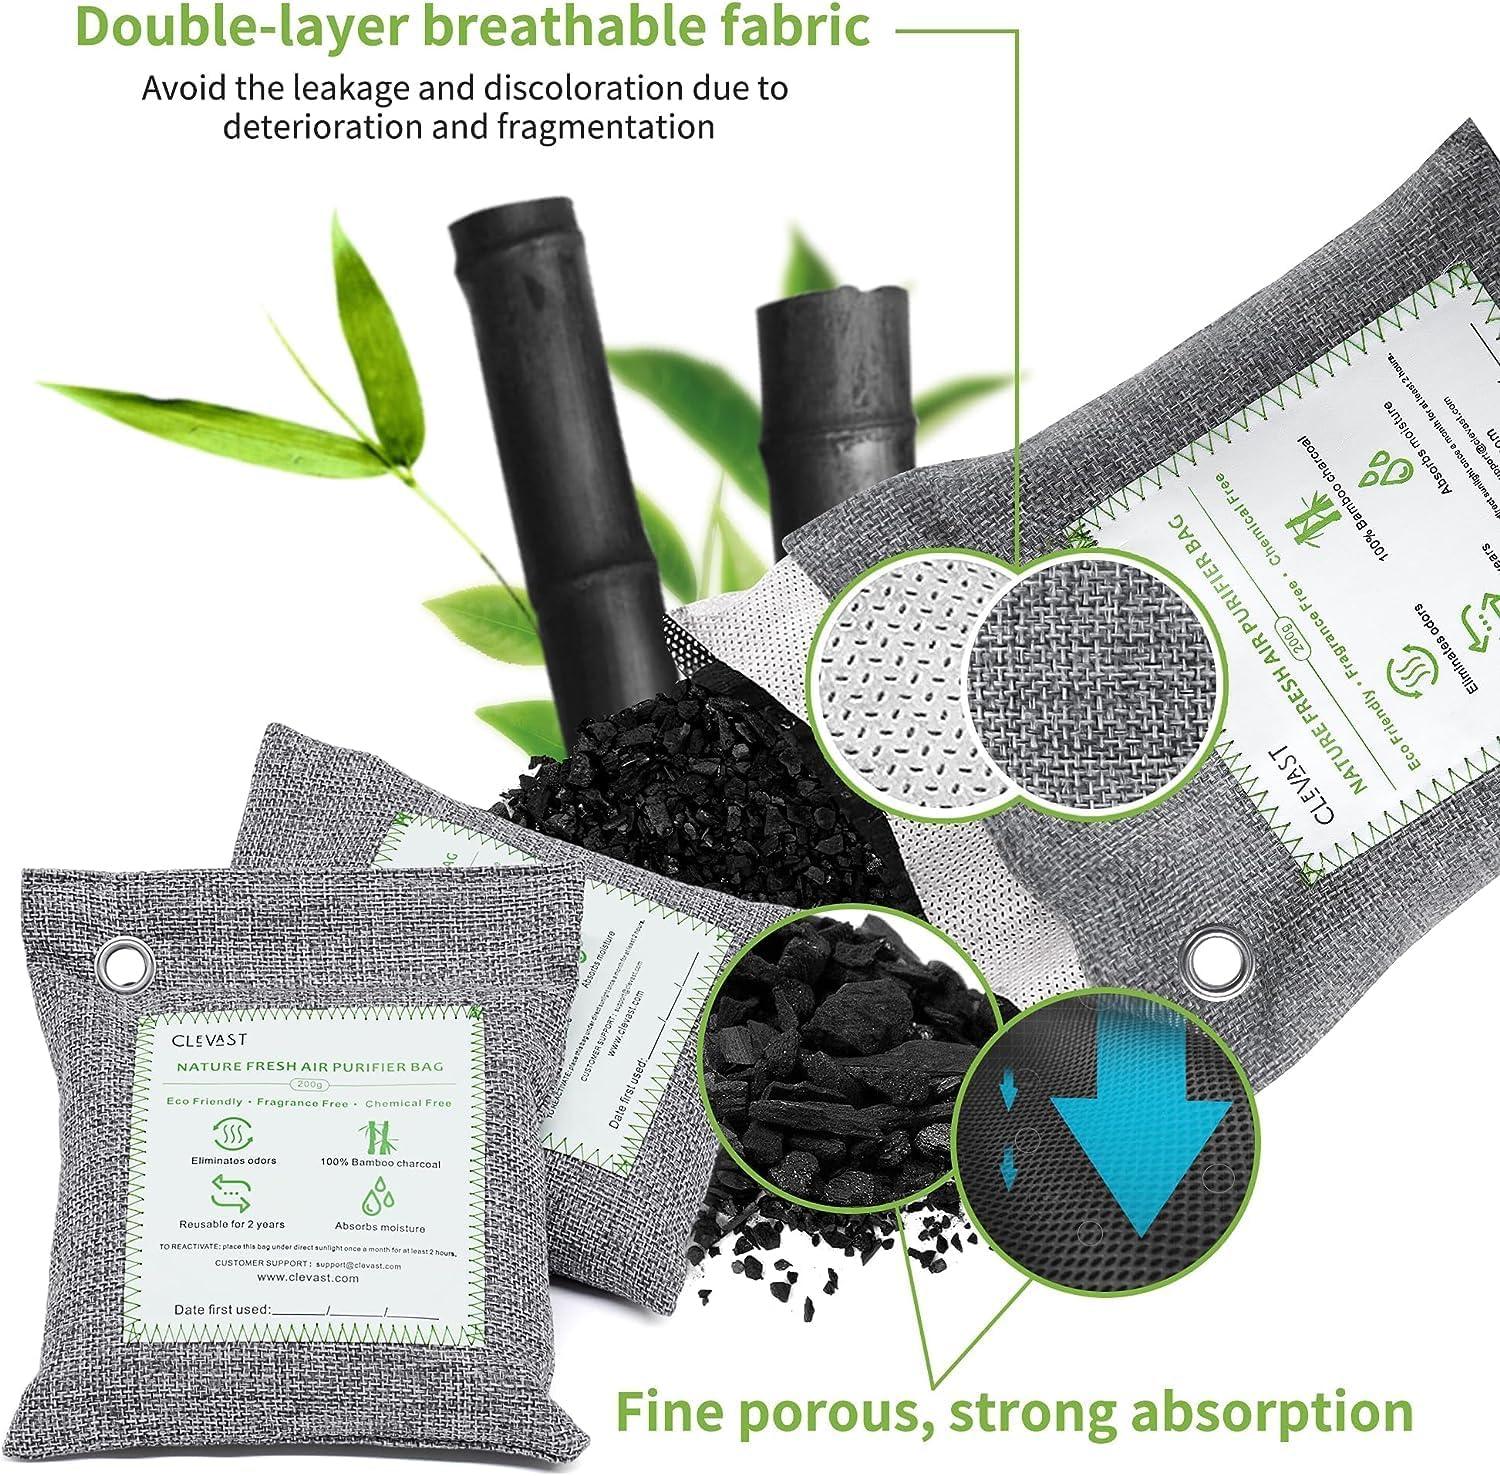 Bolsas purificadoras de aire de carbón de bambú (4 x 7.05oz), eliminan olores y - VIRTUAL MUEBLES